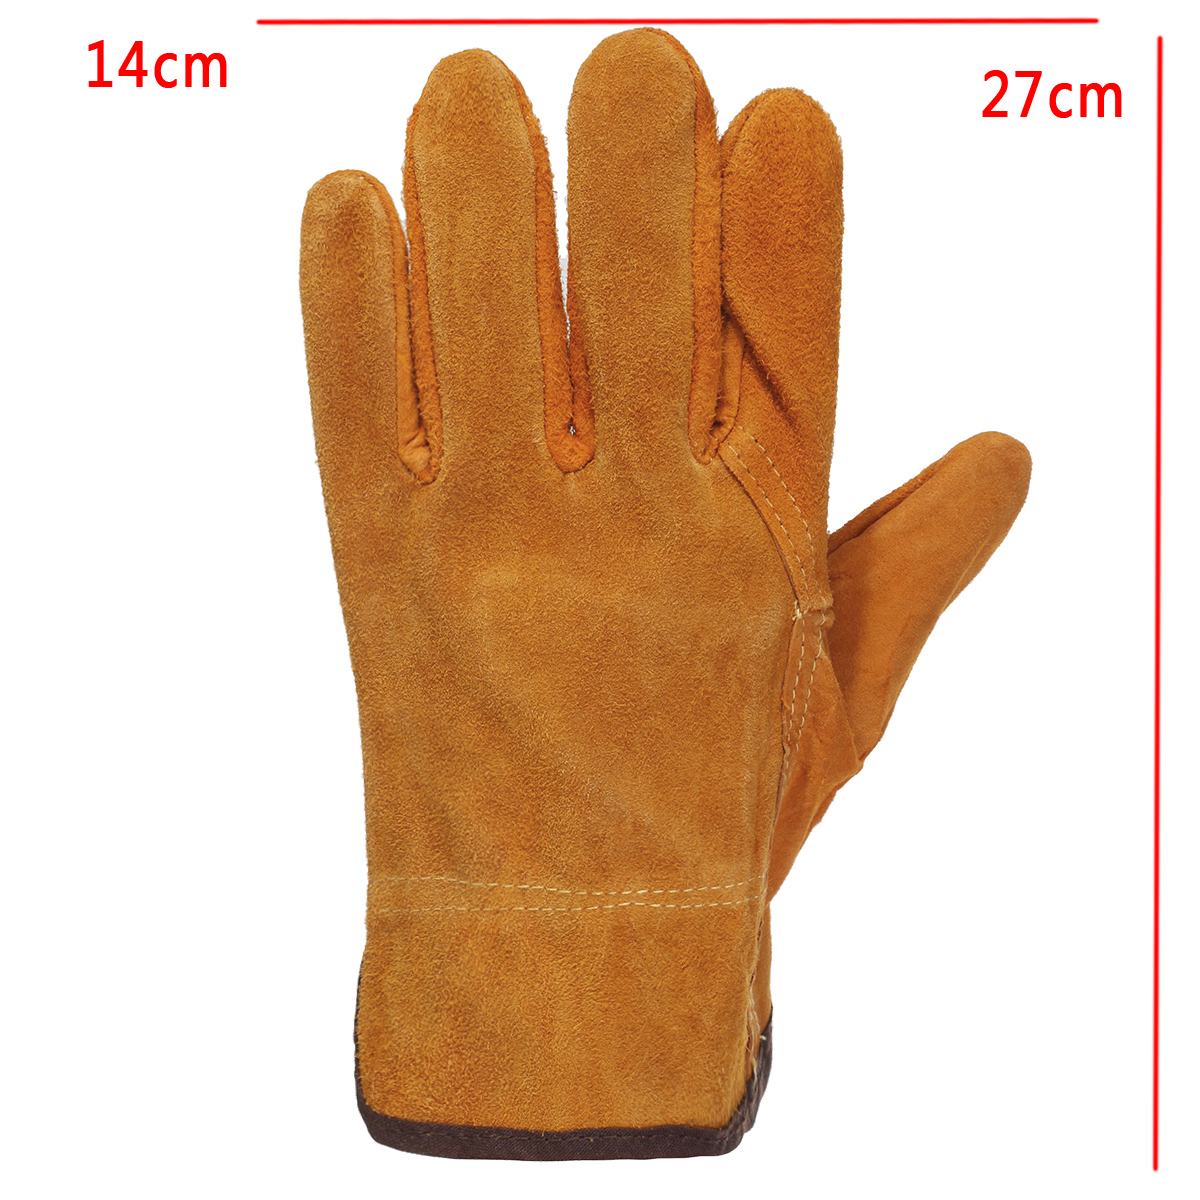 Garden-Gardening-Welder-Gloves-Men-Women-Thorn-Proof-Leather-Work-Gloves-Yellow-1630104-9